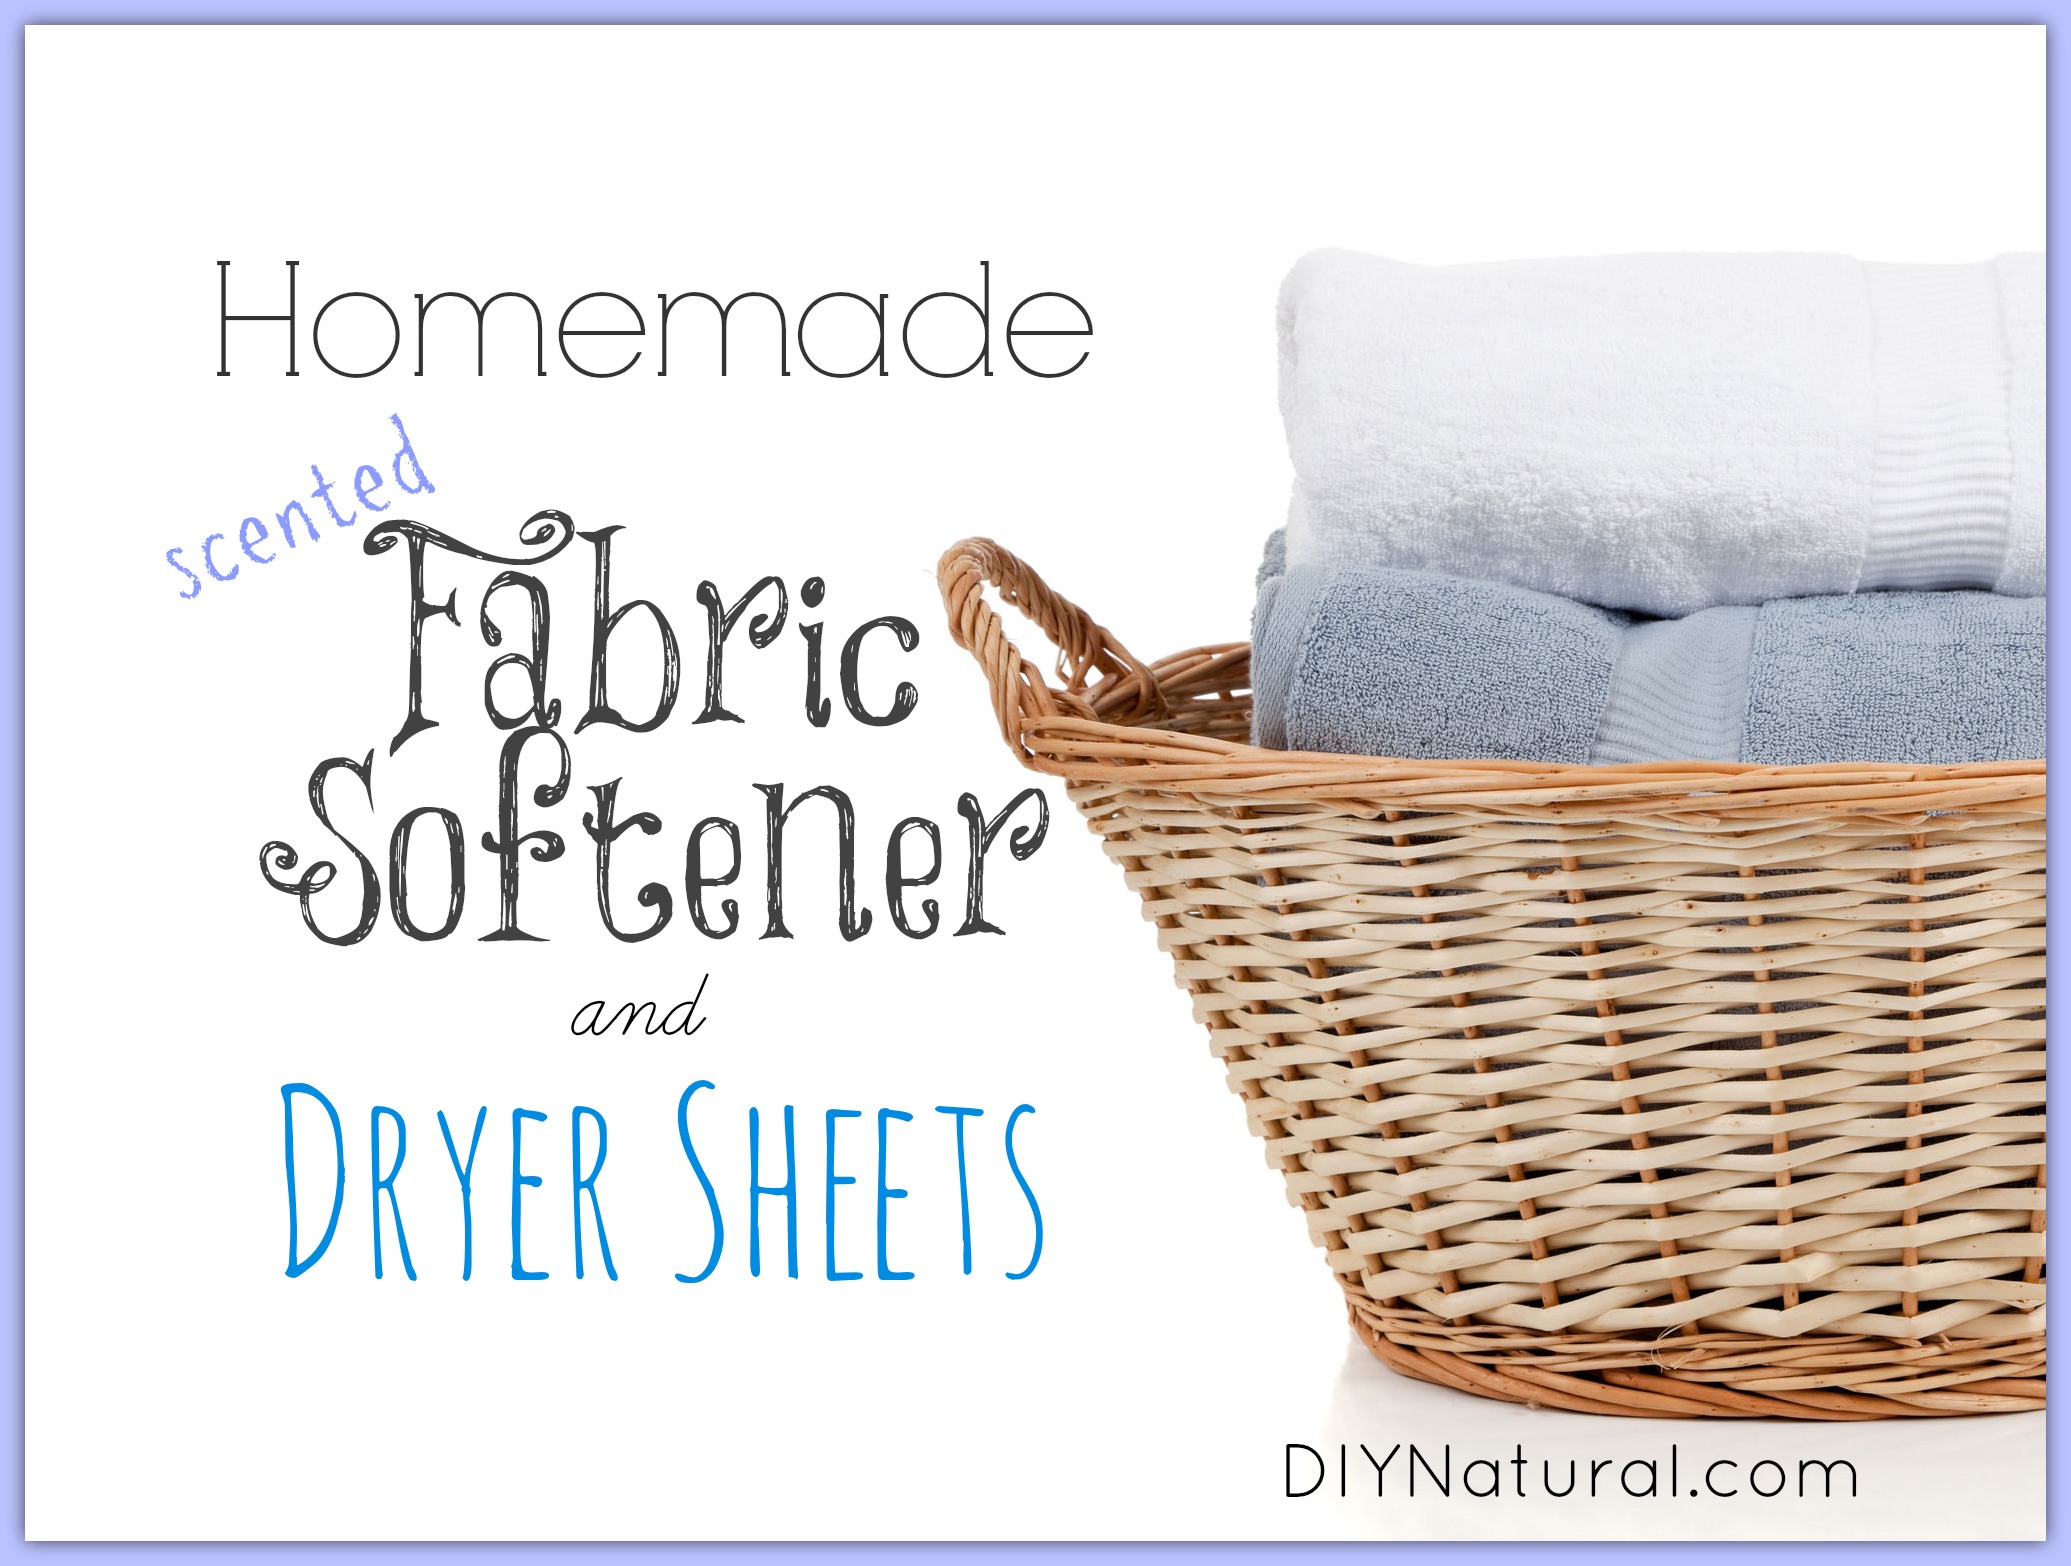 Homemade Fabric Softener and Homemade